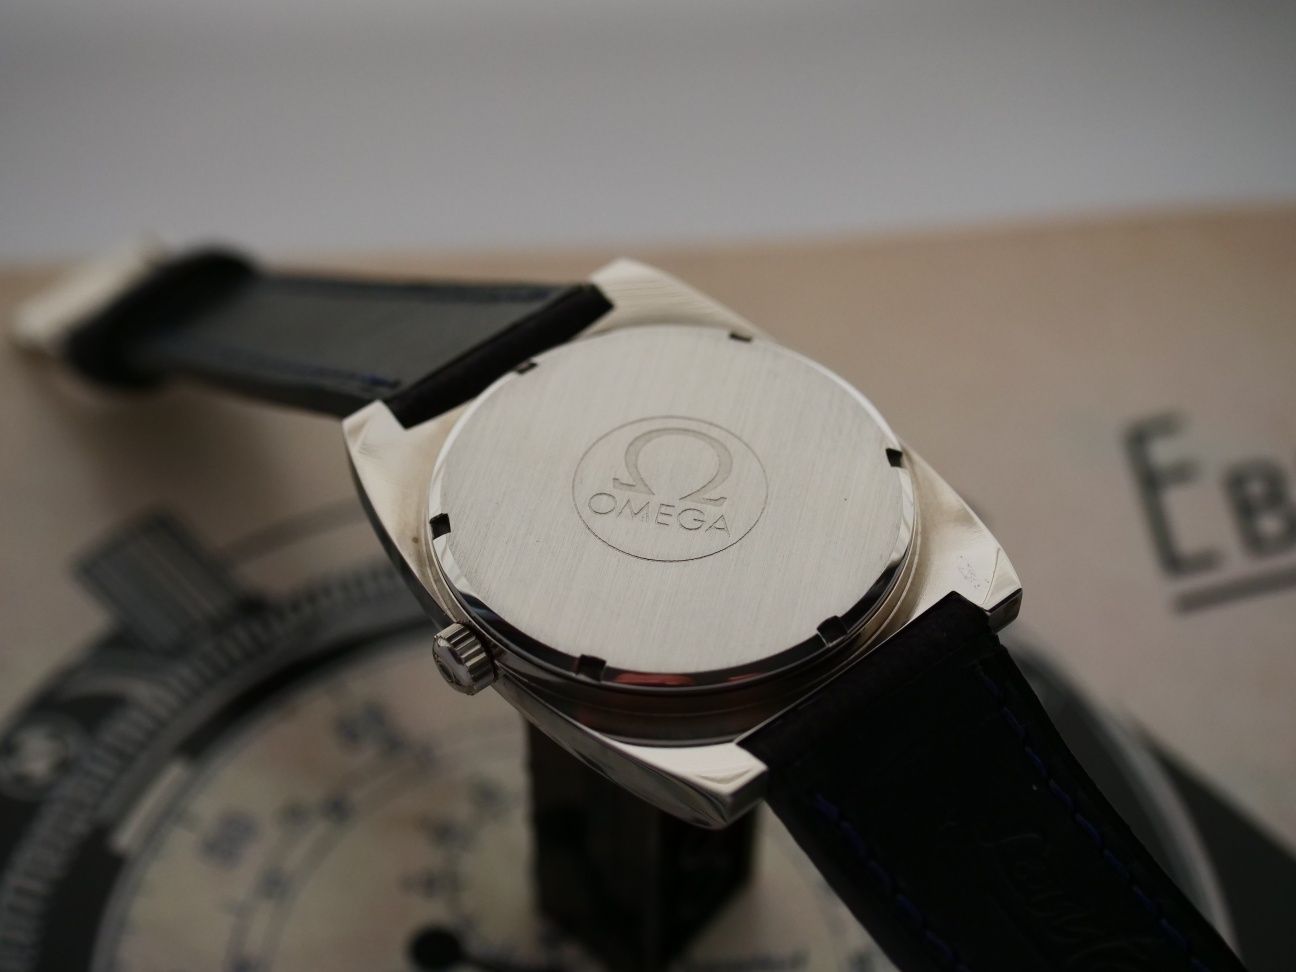 Omega Geneve automatic swiss made zegarek szwajcarski vintage stary